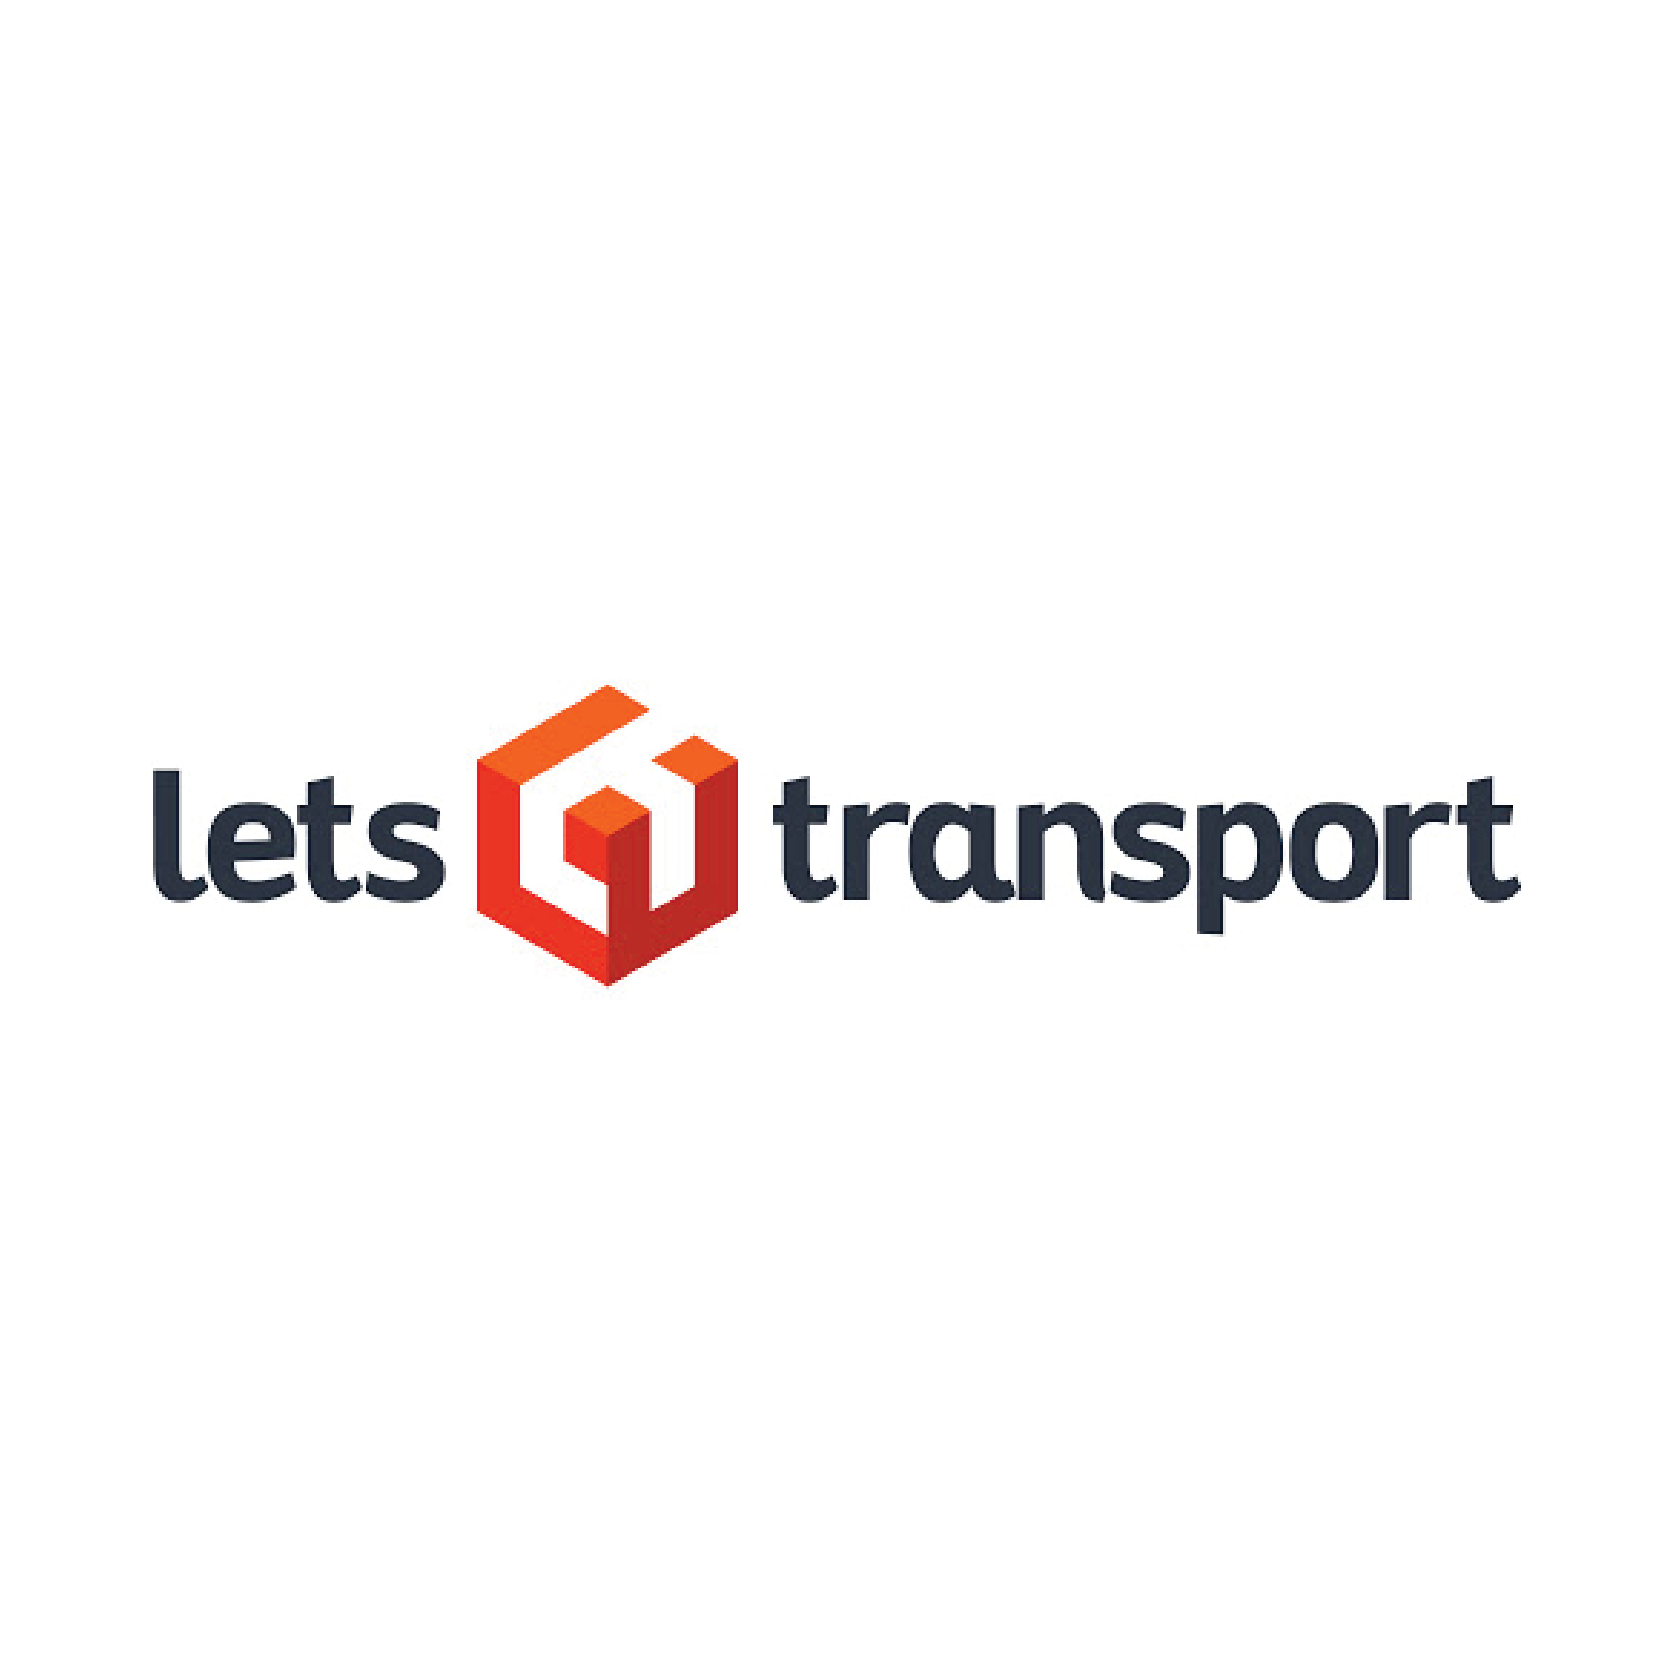 LetsTransport | YourStory